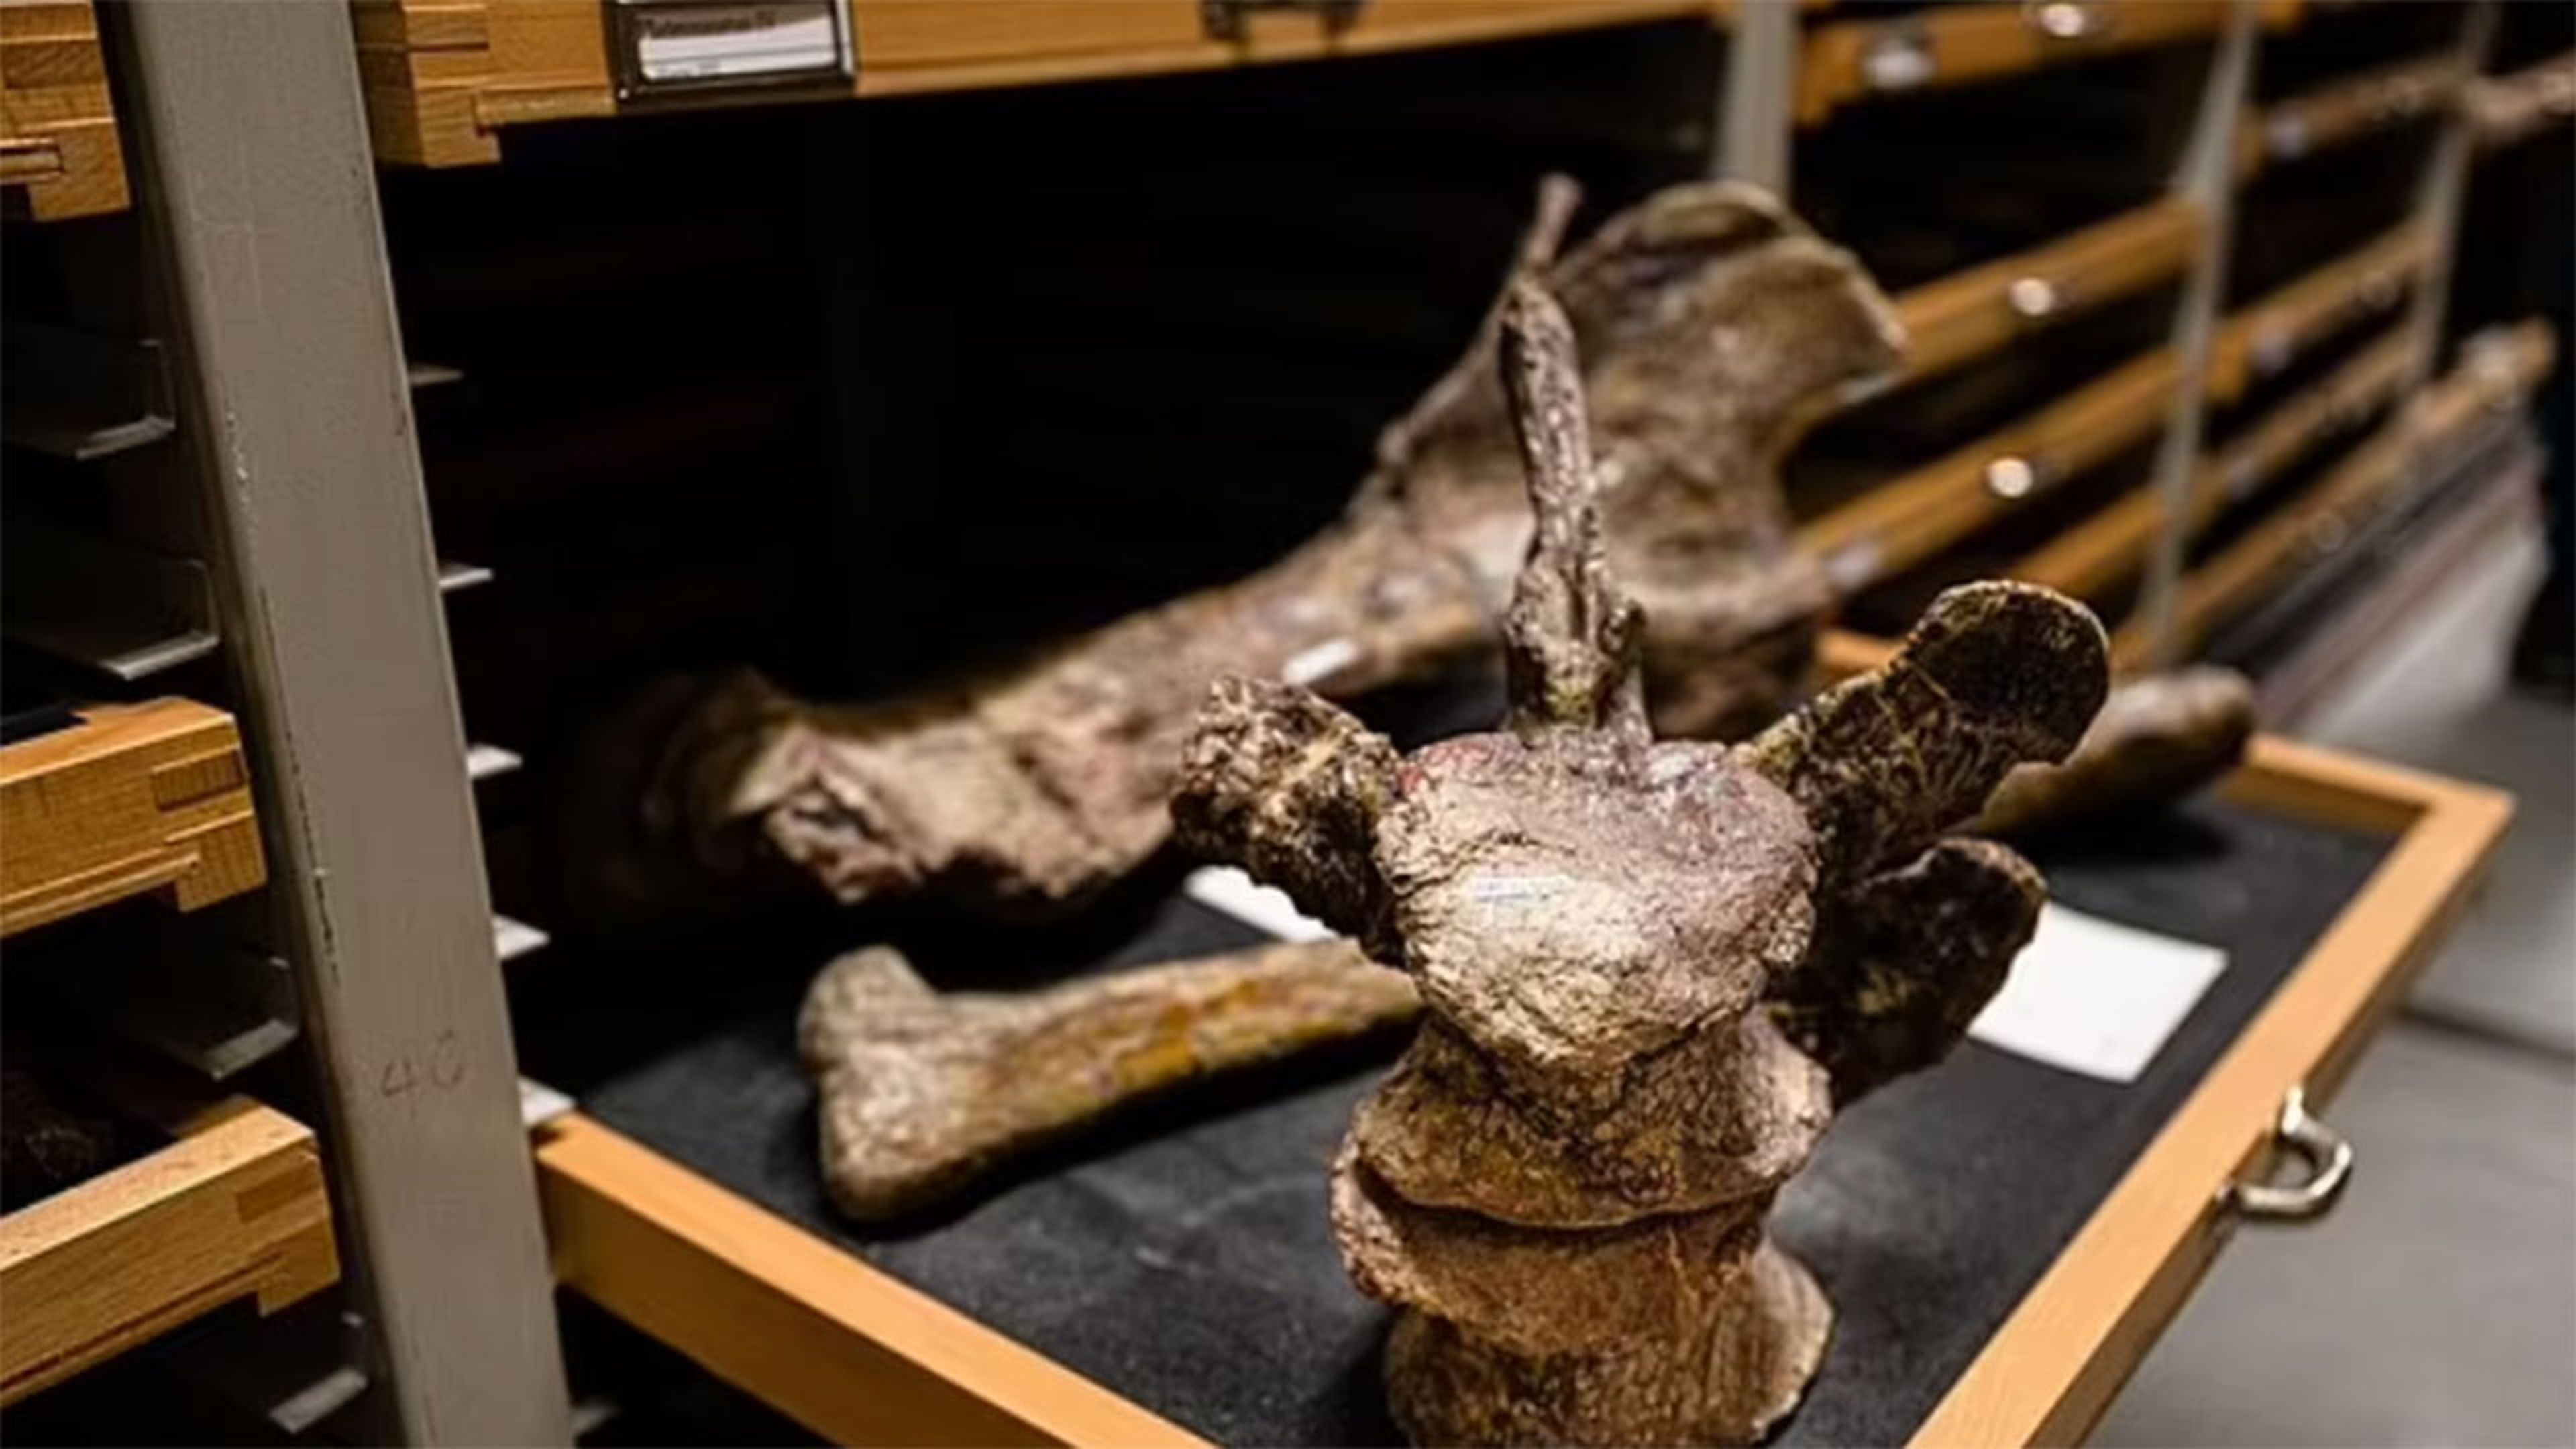 Descubren en Alemania una especie desconocida de dinosaurio que pasó inadvertida durante 100 años en un museo